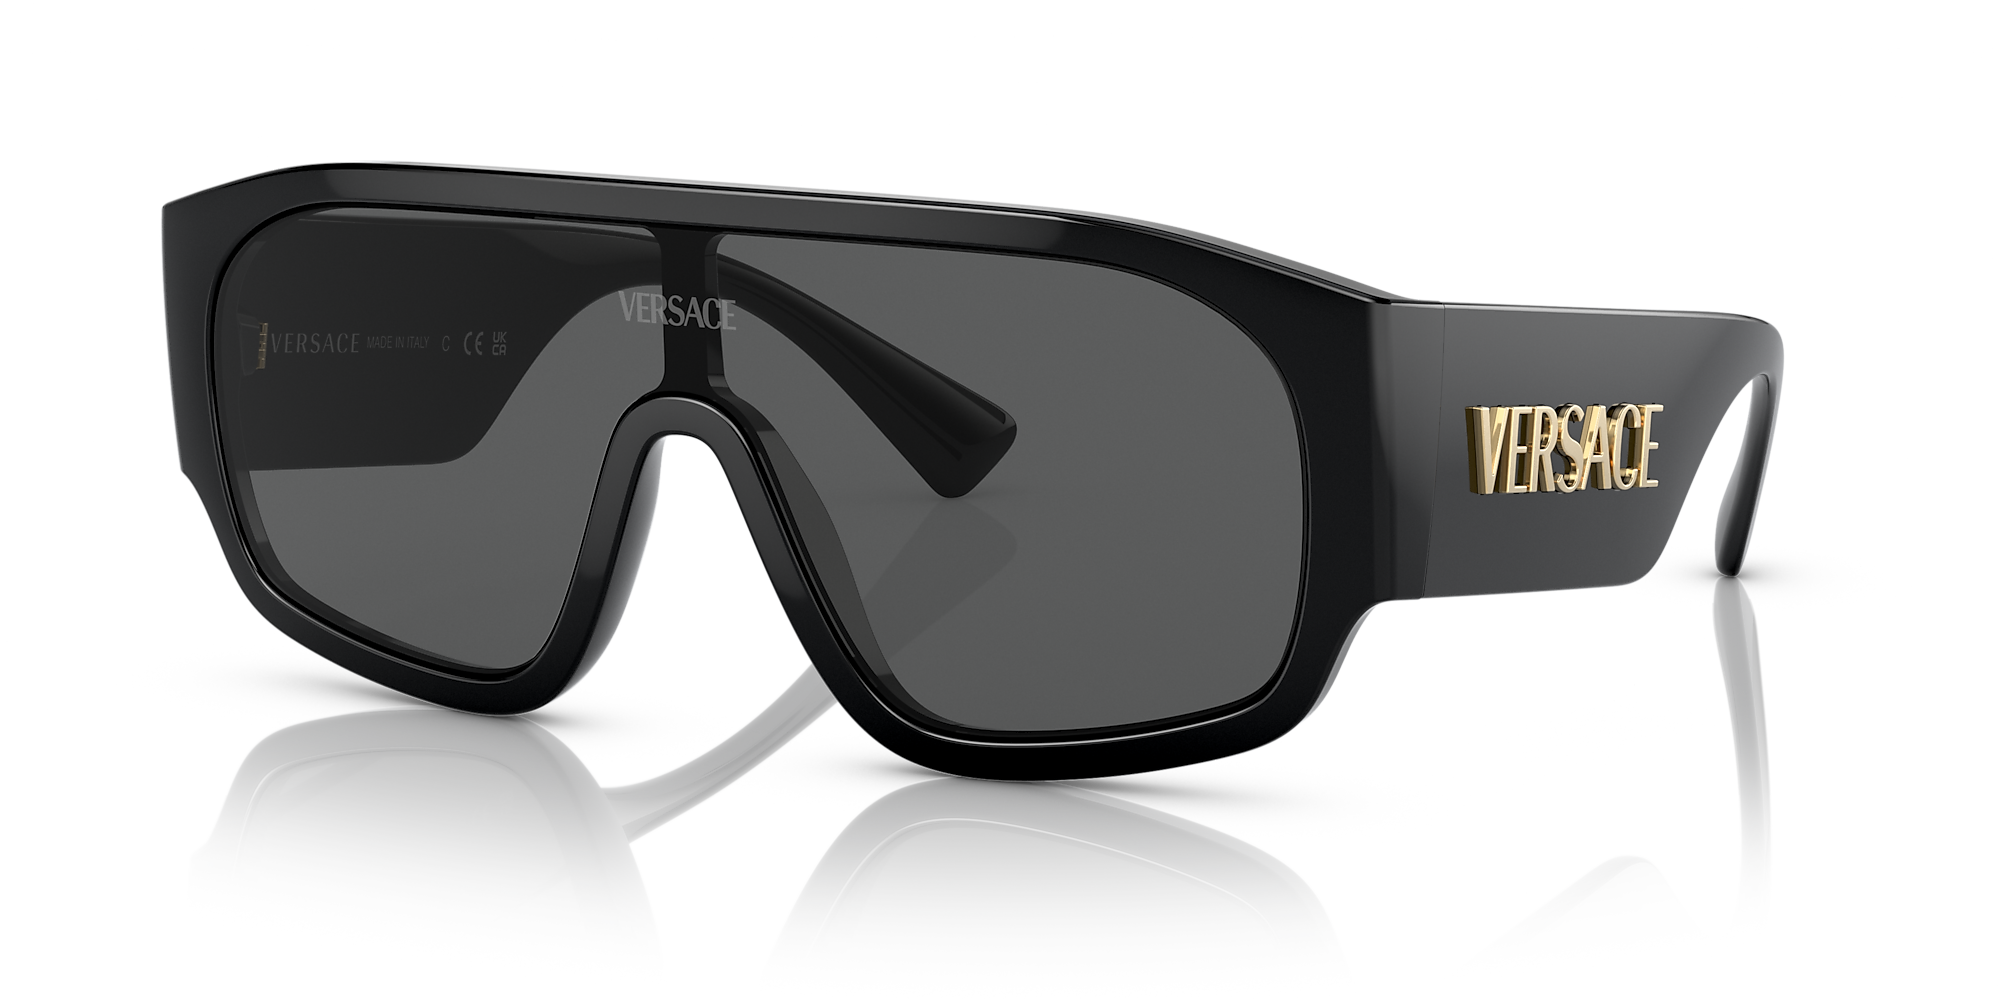 Versace Ve4439 01 Dark Grey And Black Sunglasses Sunglass Hut Usa 